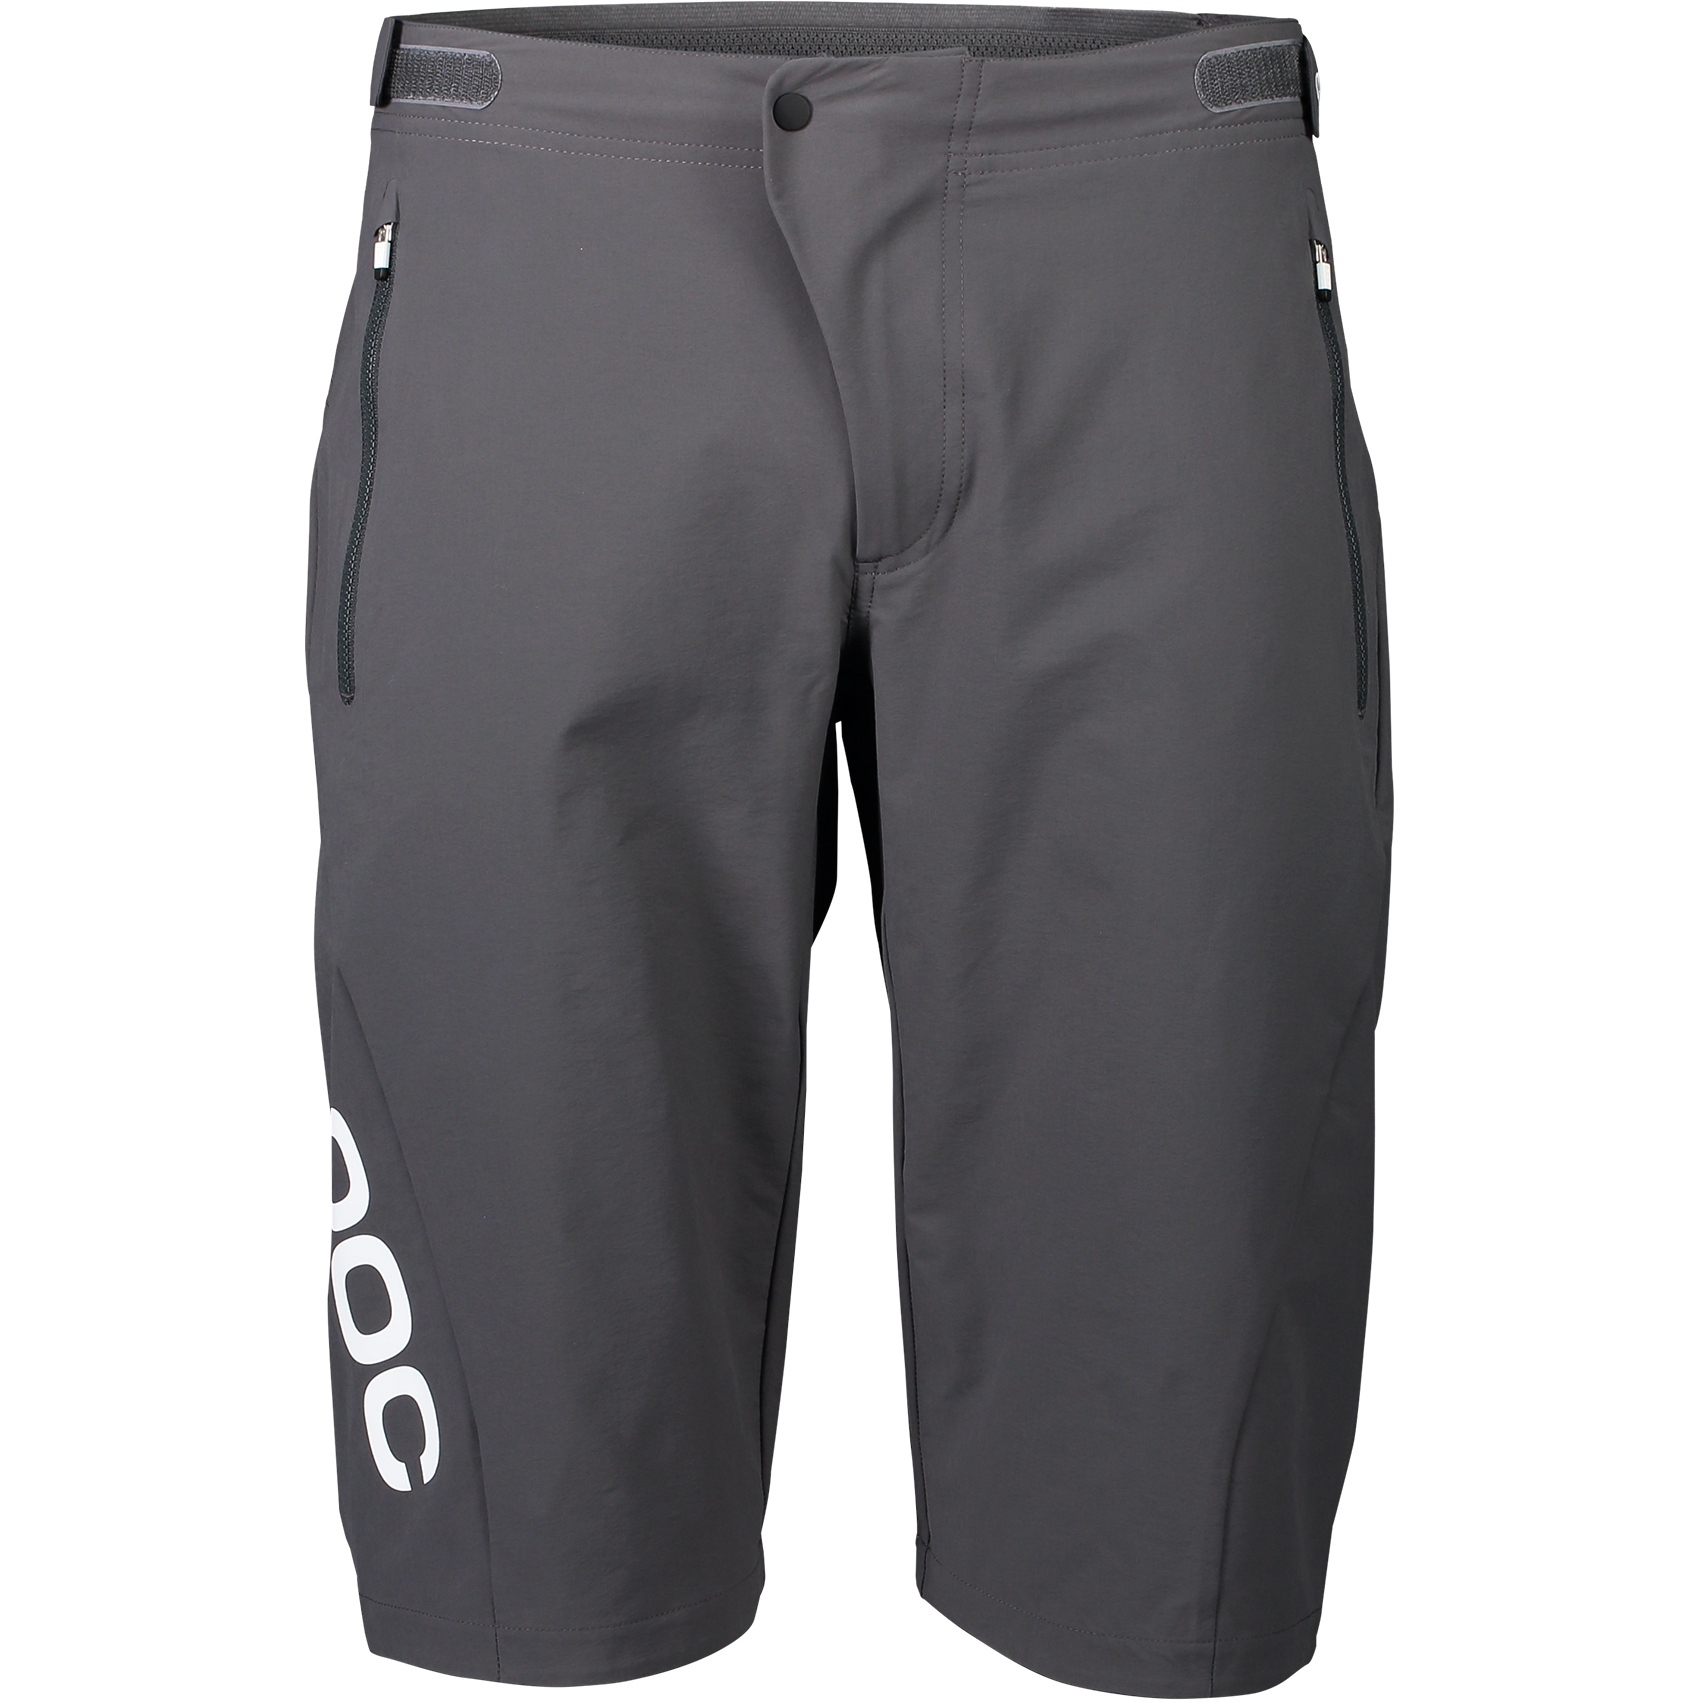 Produktbild von POC Essential Enduro Shorts - 1043 Sylvanite Grey